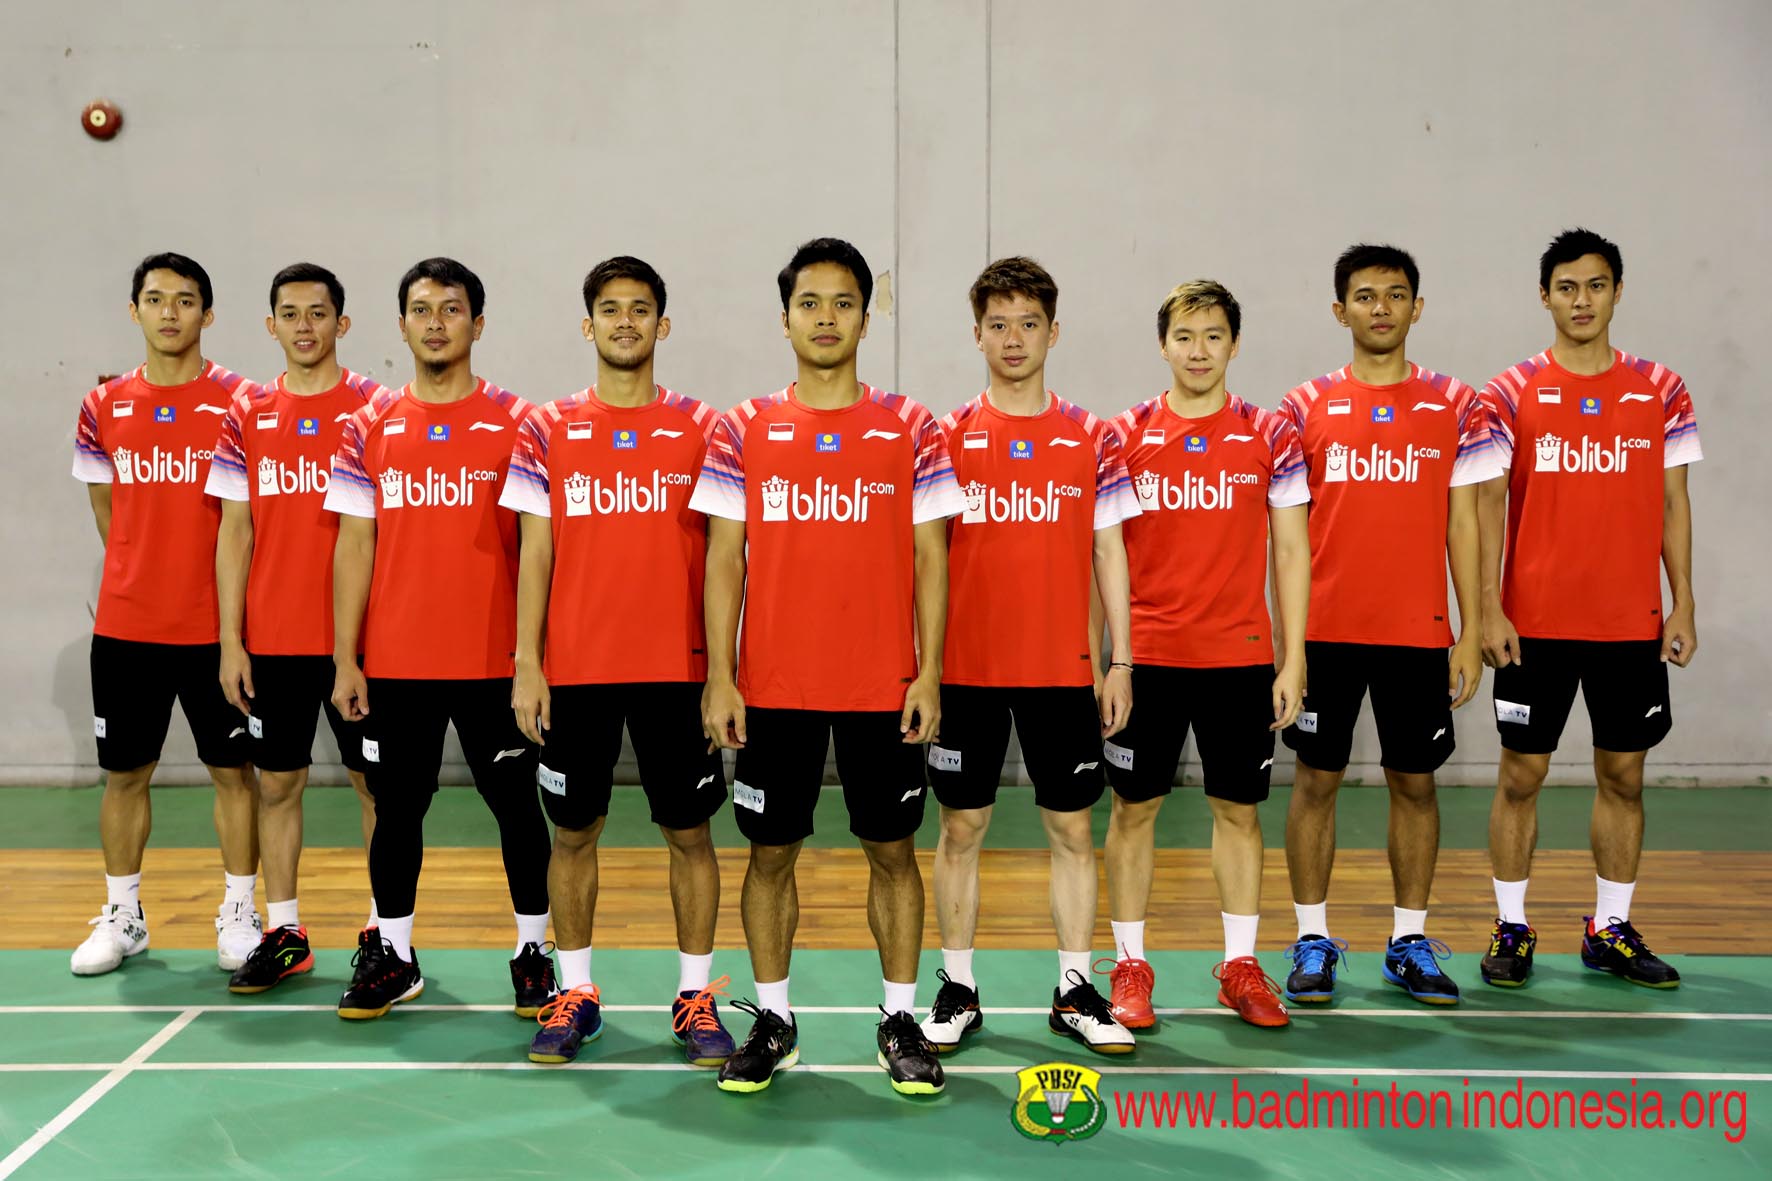 BATC 2020: Susunan Pemain Tim Putra Indonesia vs Korea Selatan